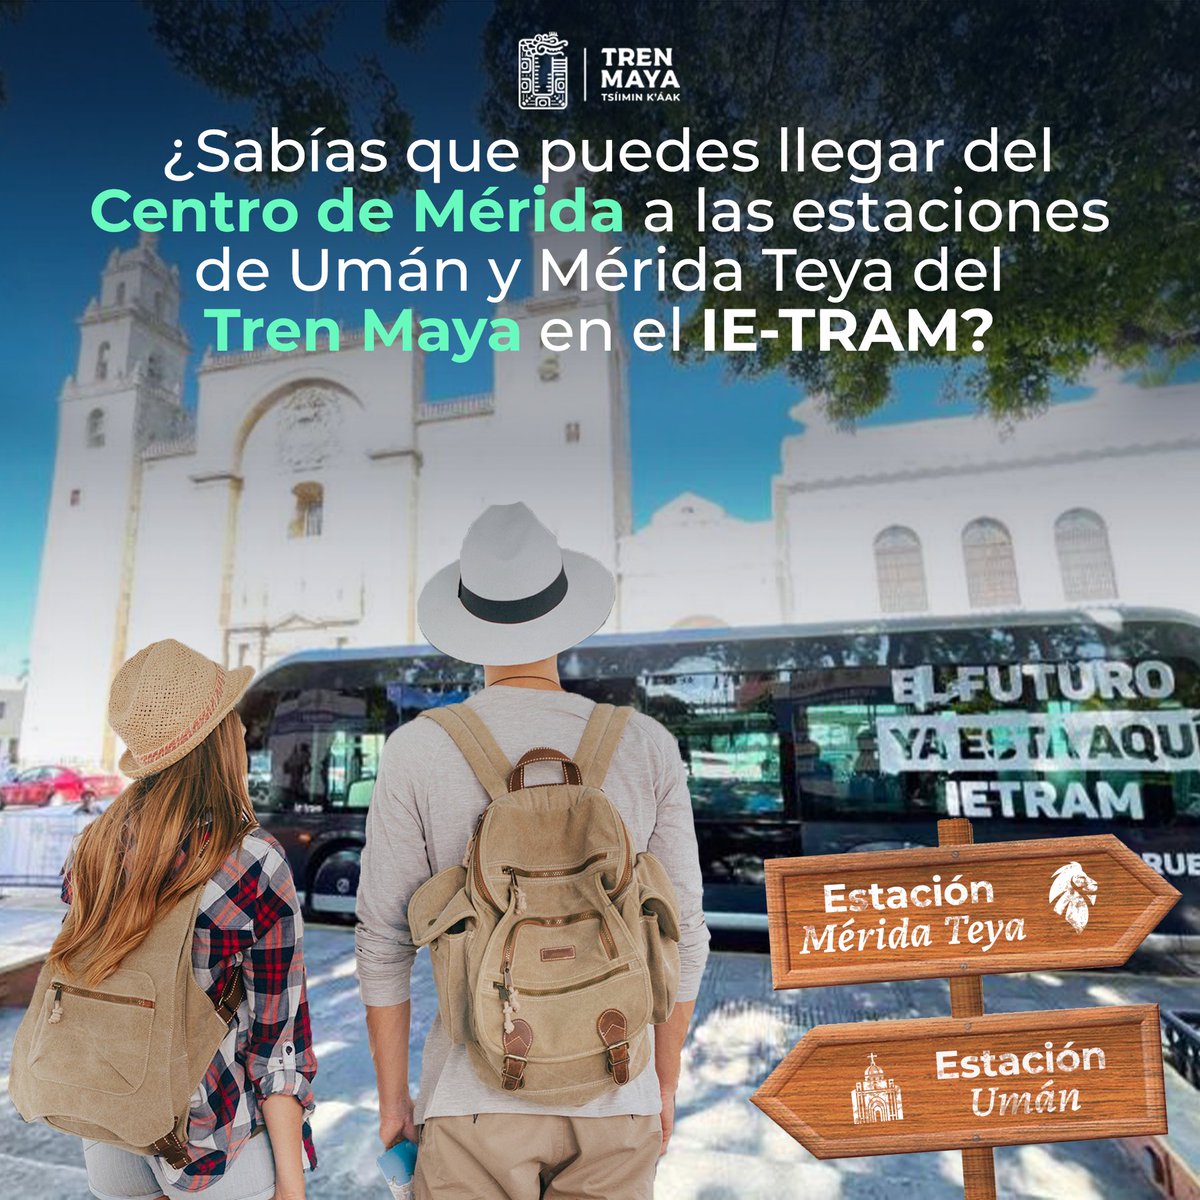 ¡Ahora es más fácil llegar a las estaciones de Umán y Mérida Teya del Tren Maya, desde el centro de Mérida gracias al IE Tram! 🚆 ¡Te esperamos para vivir momentos inolvidables! 🚂✨ #TrenMaya #IETram #Mérida 🌟🛤️